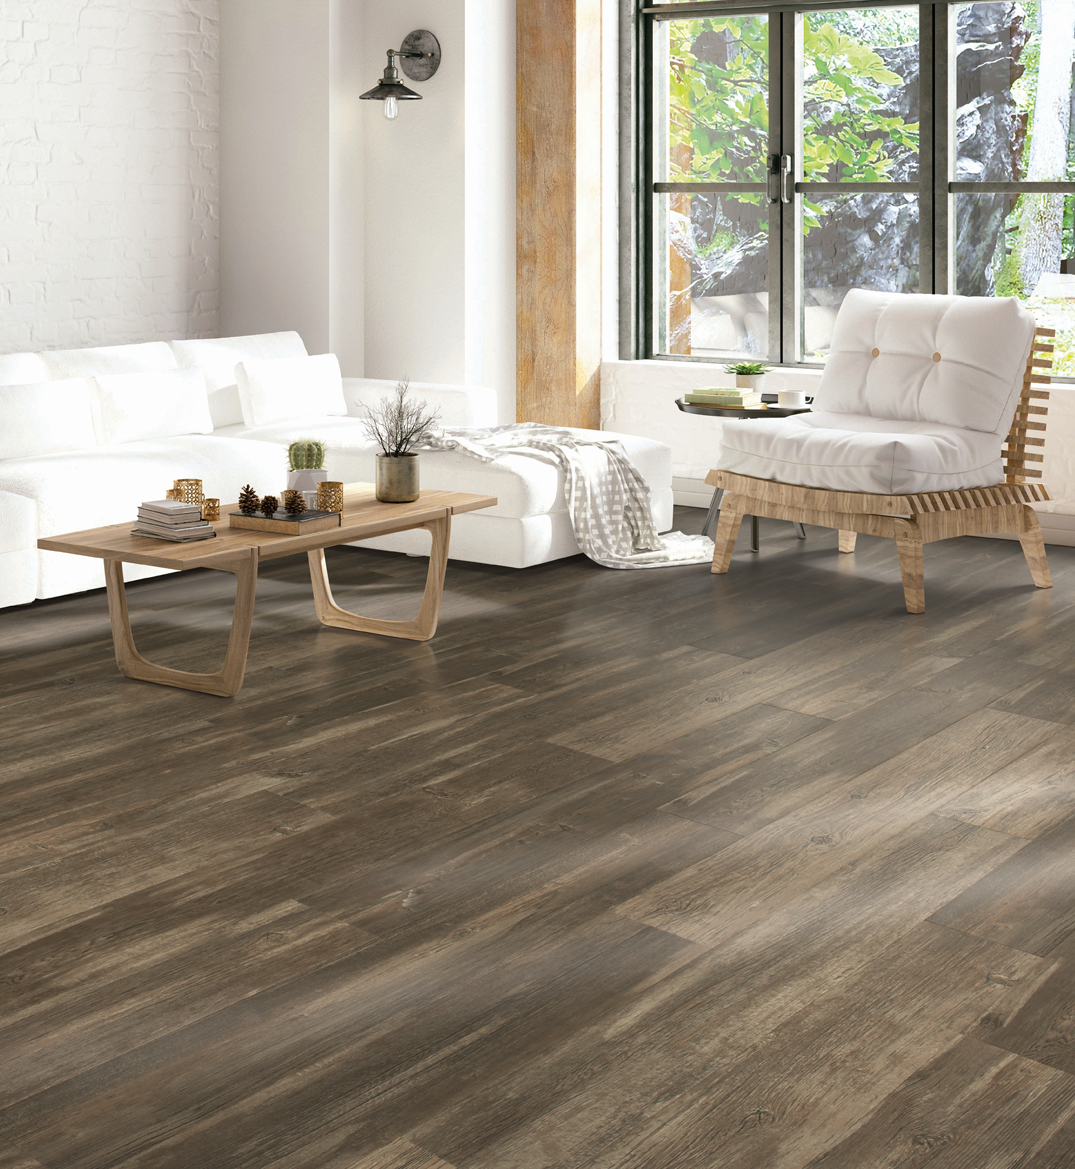 dark tone laminate wood look flooring in living room